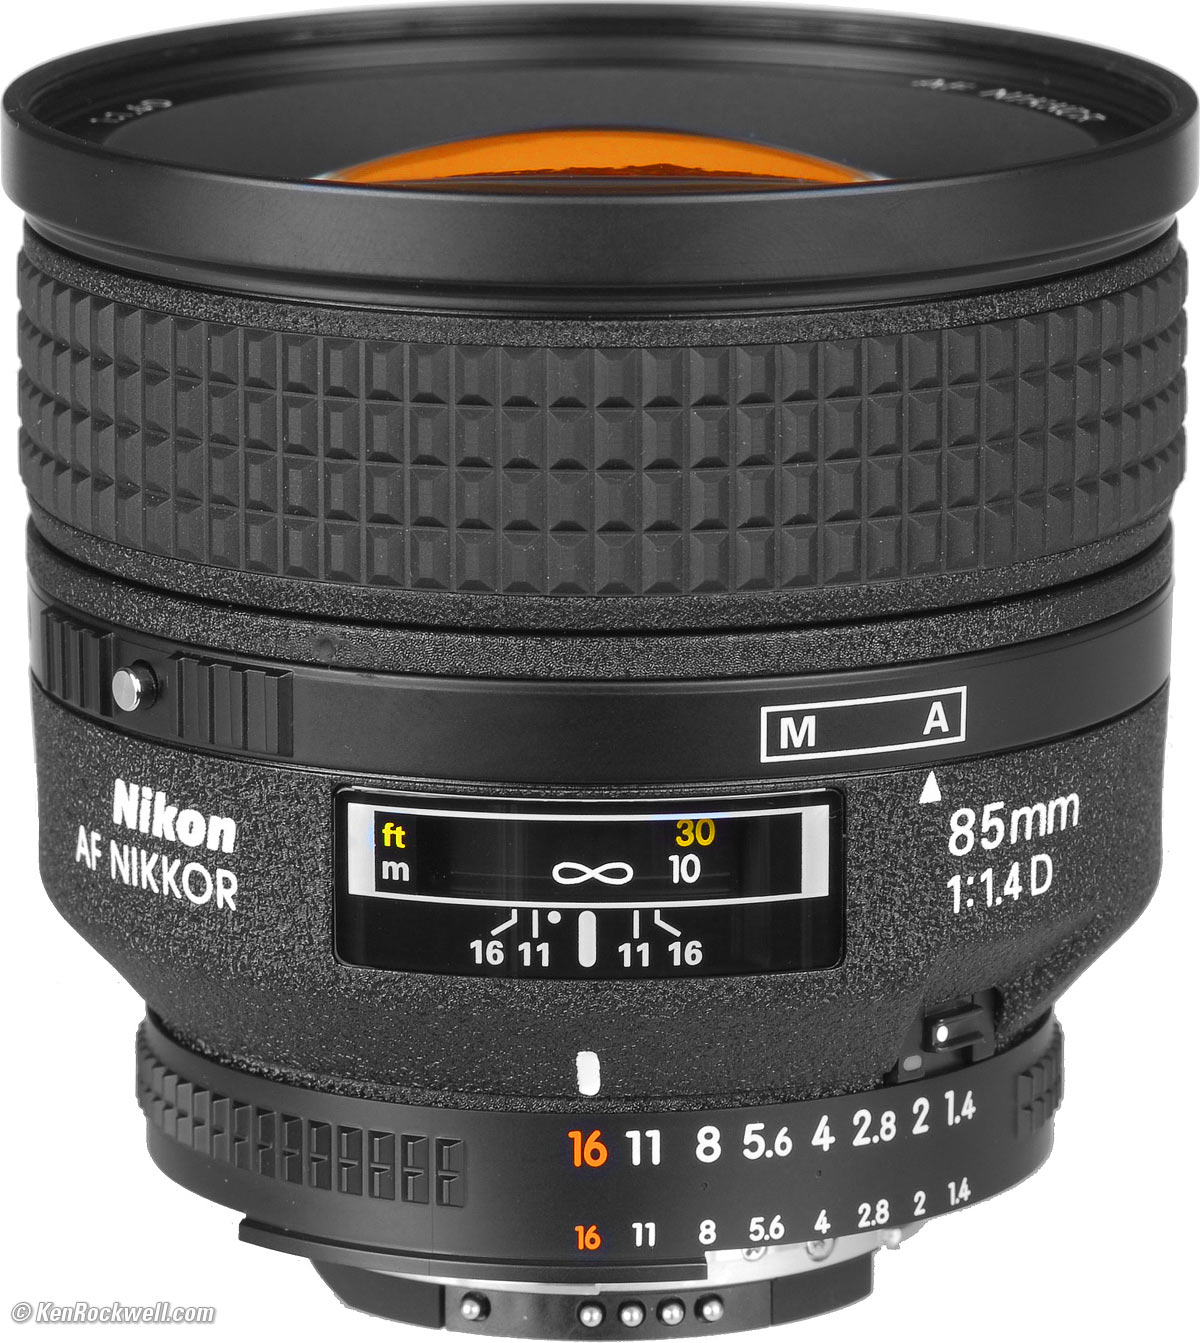 Nikon Ai AF Nikkor 85mm F1.4D